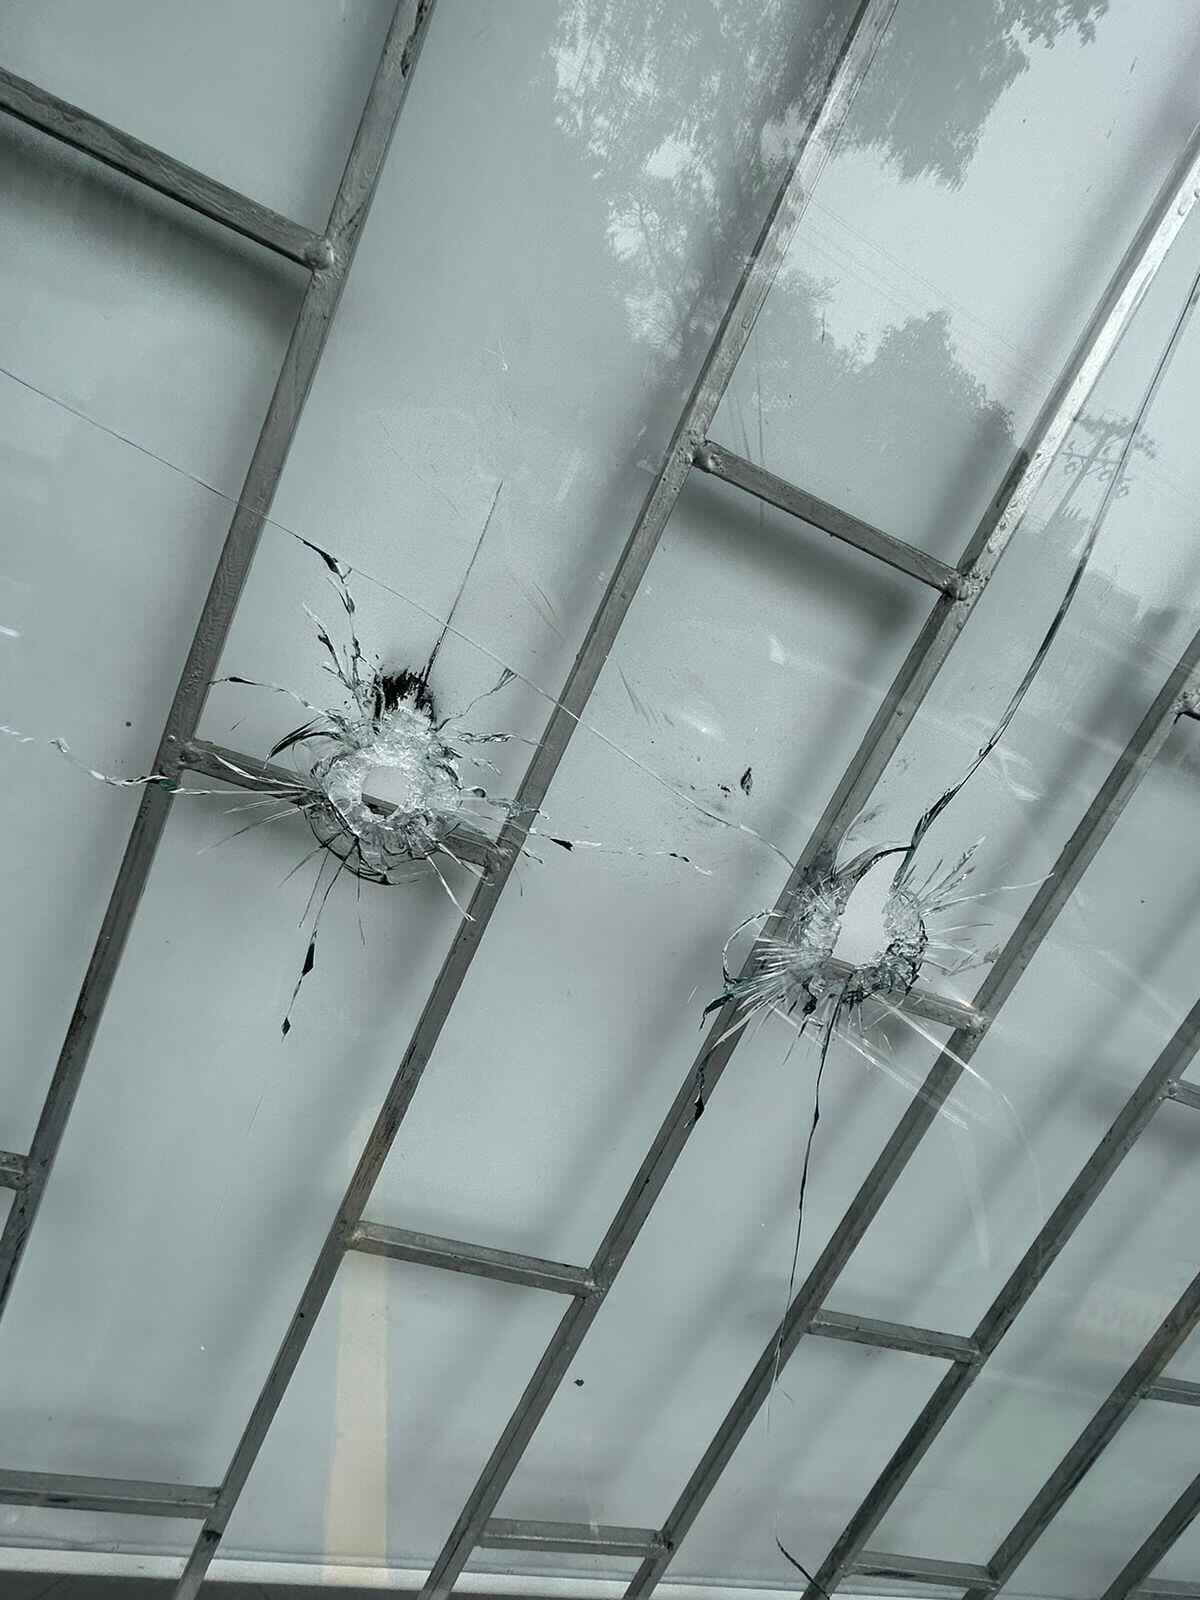 Así quedaron los vidrios del lugar tras el ataque.